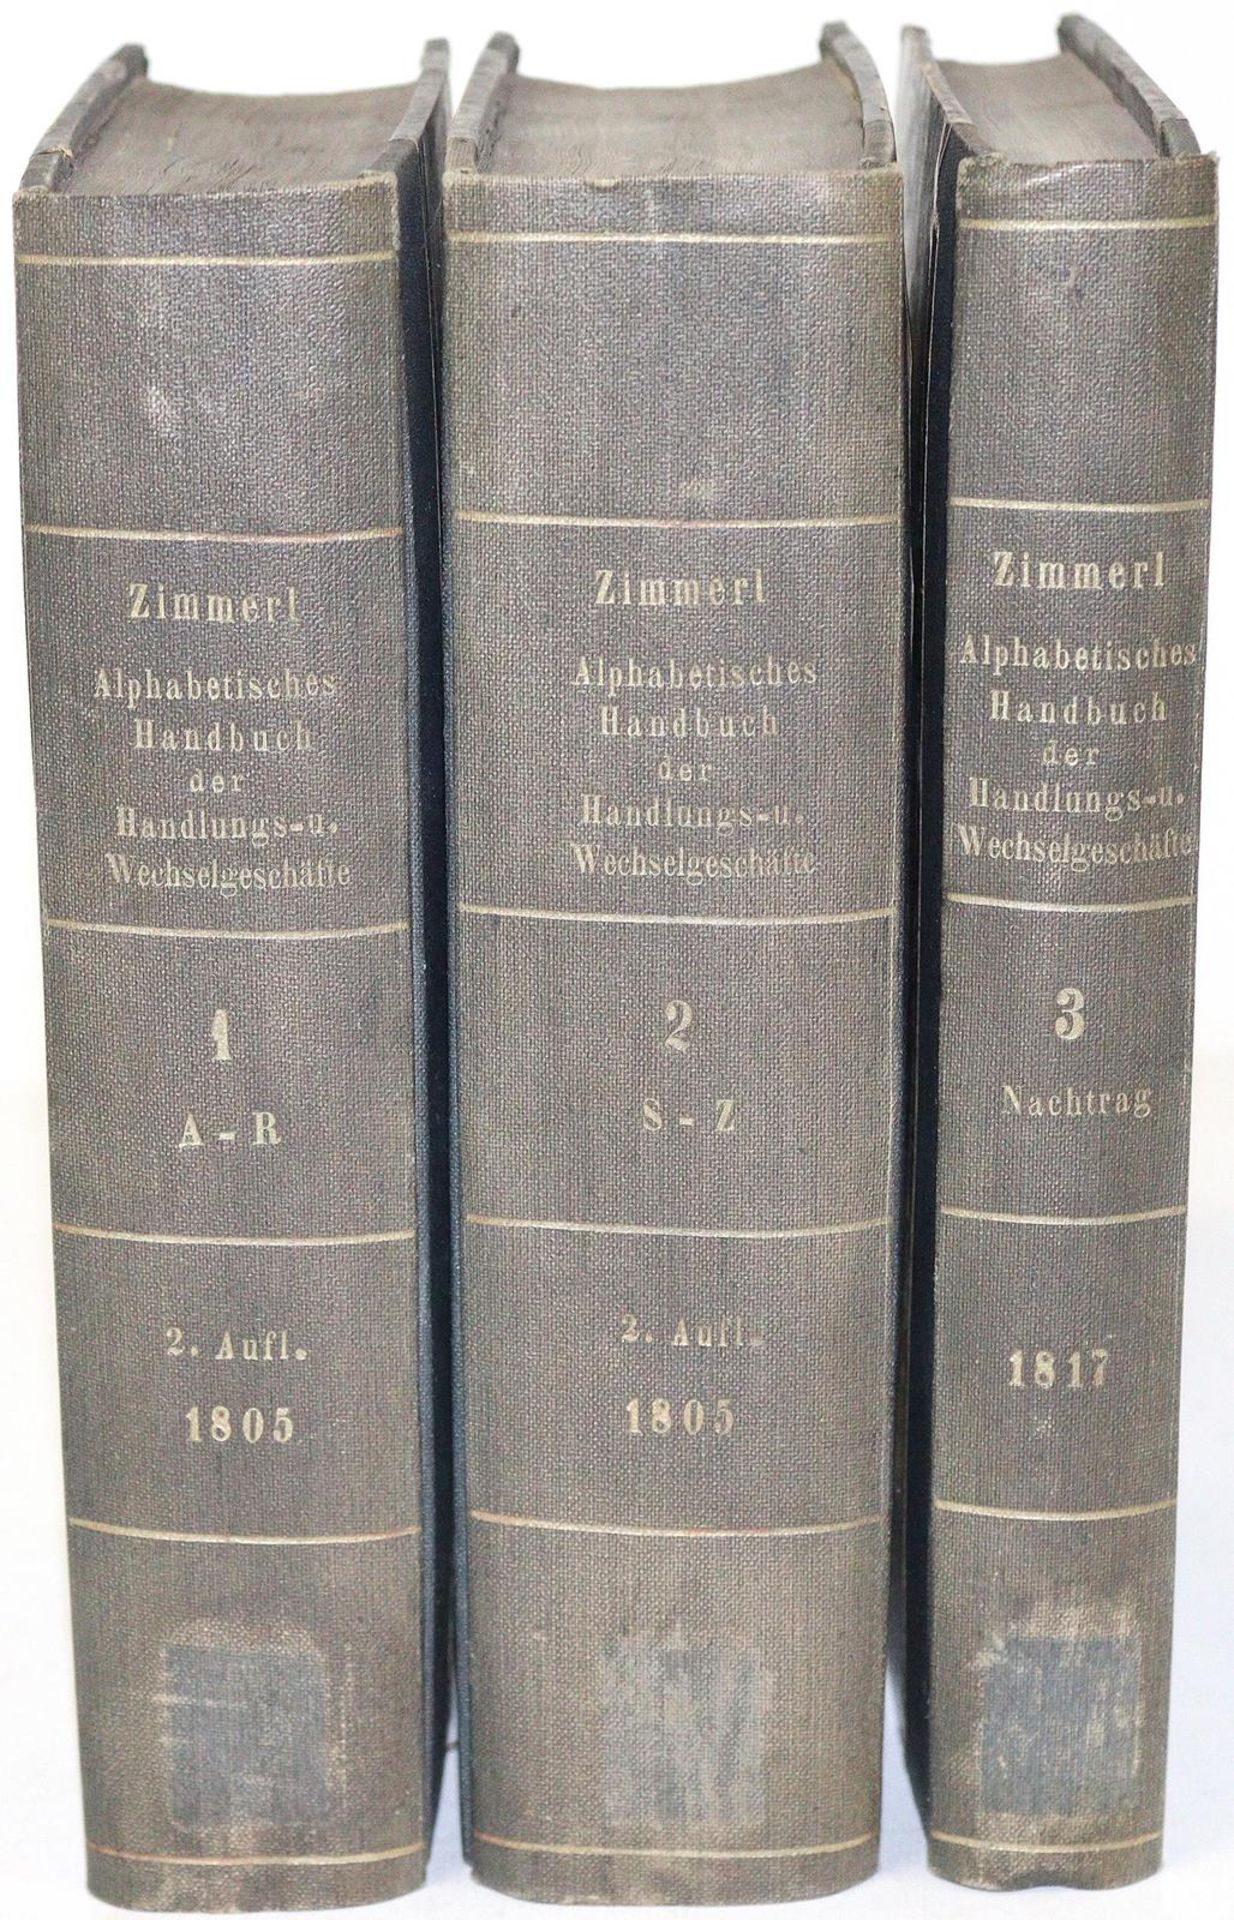 Zimmerl,J.M.E.v. - Image 2 of 2